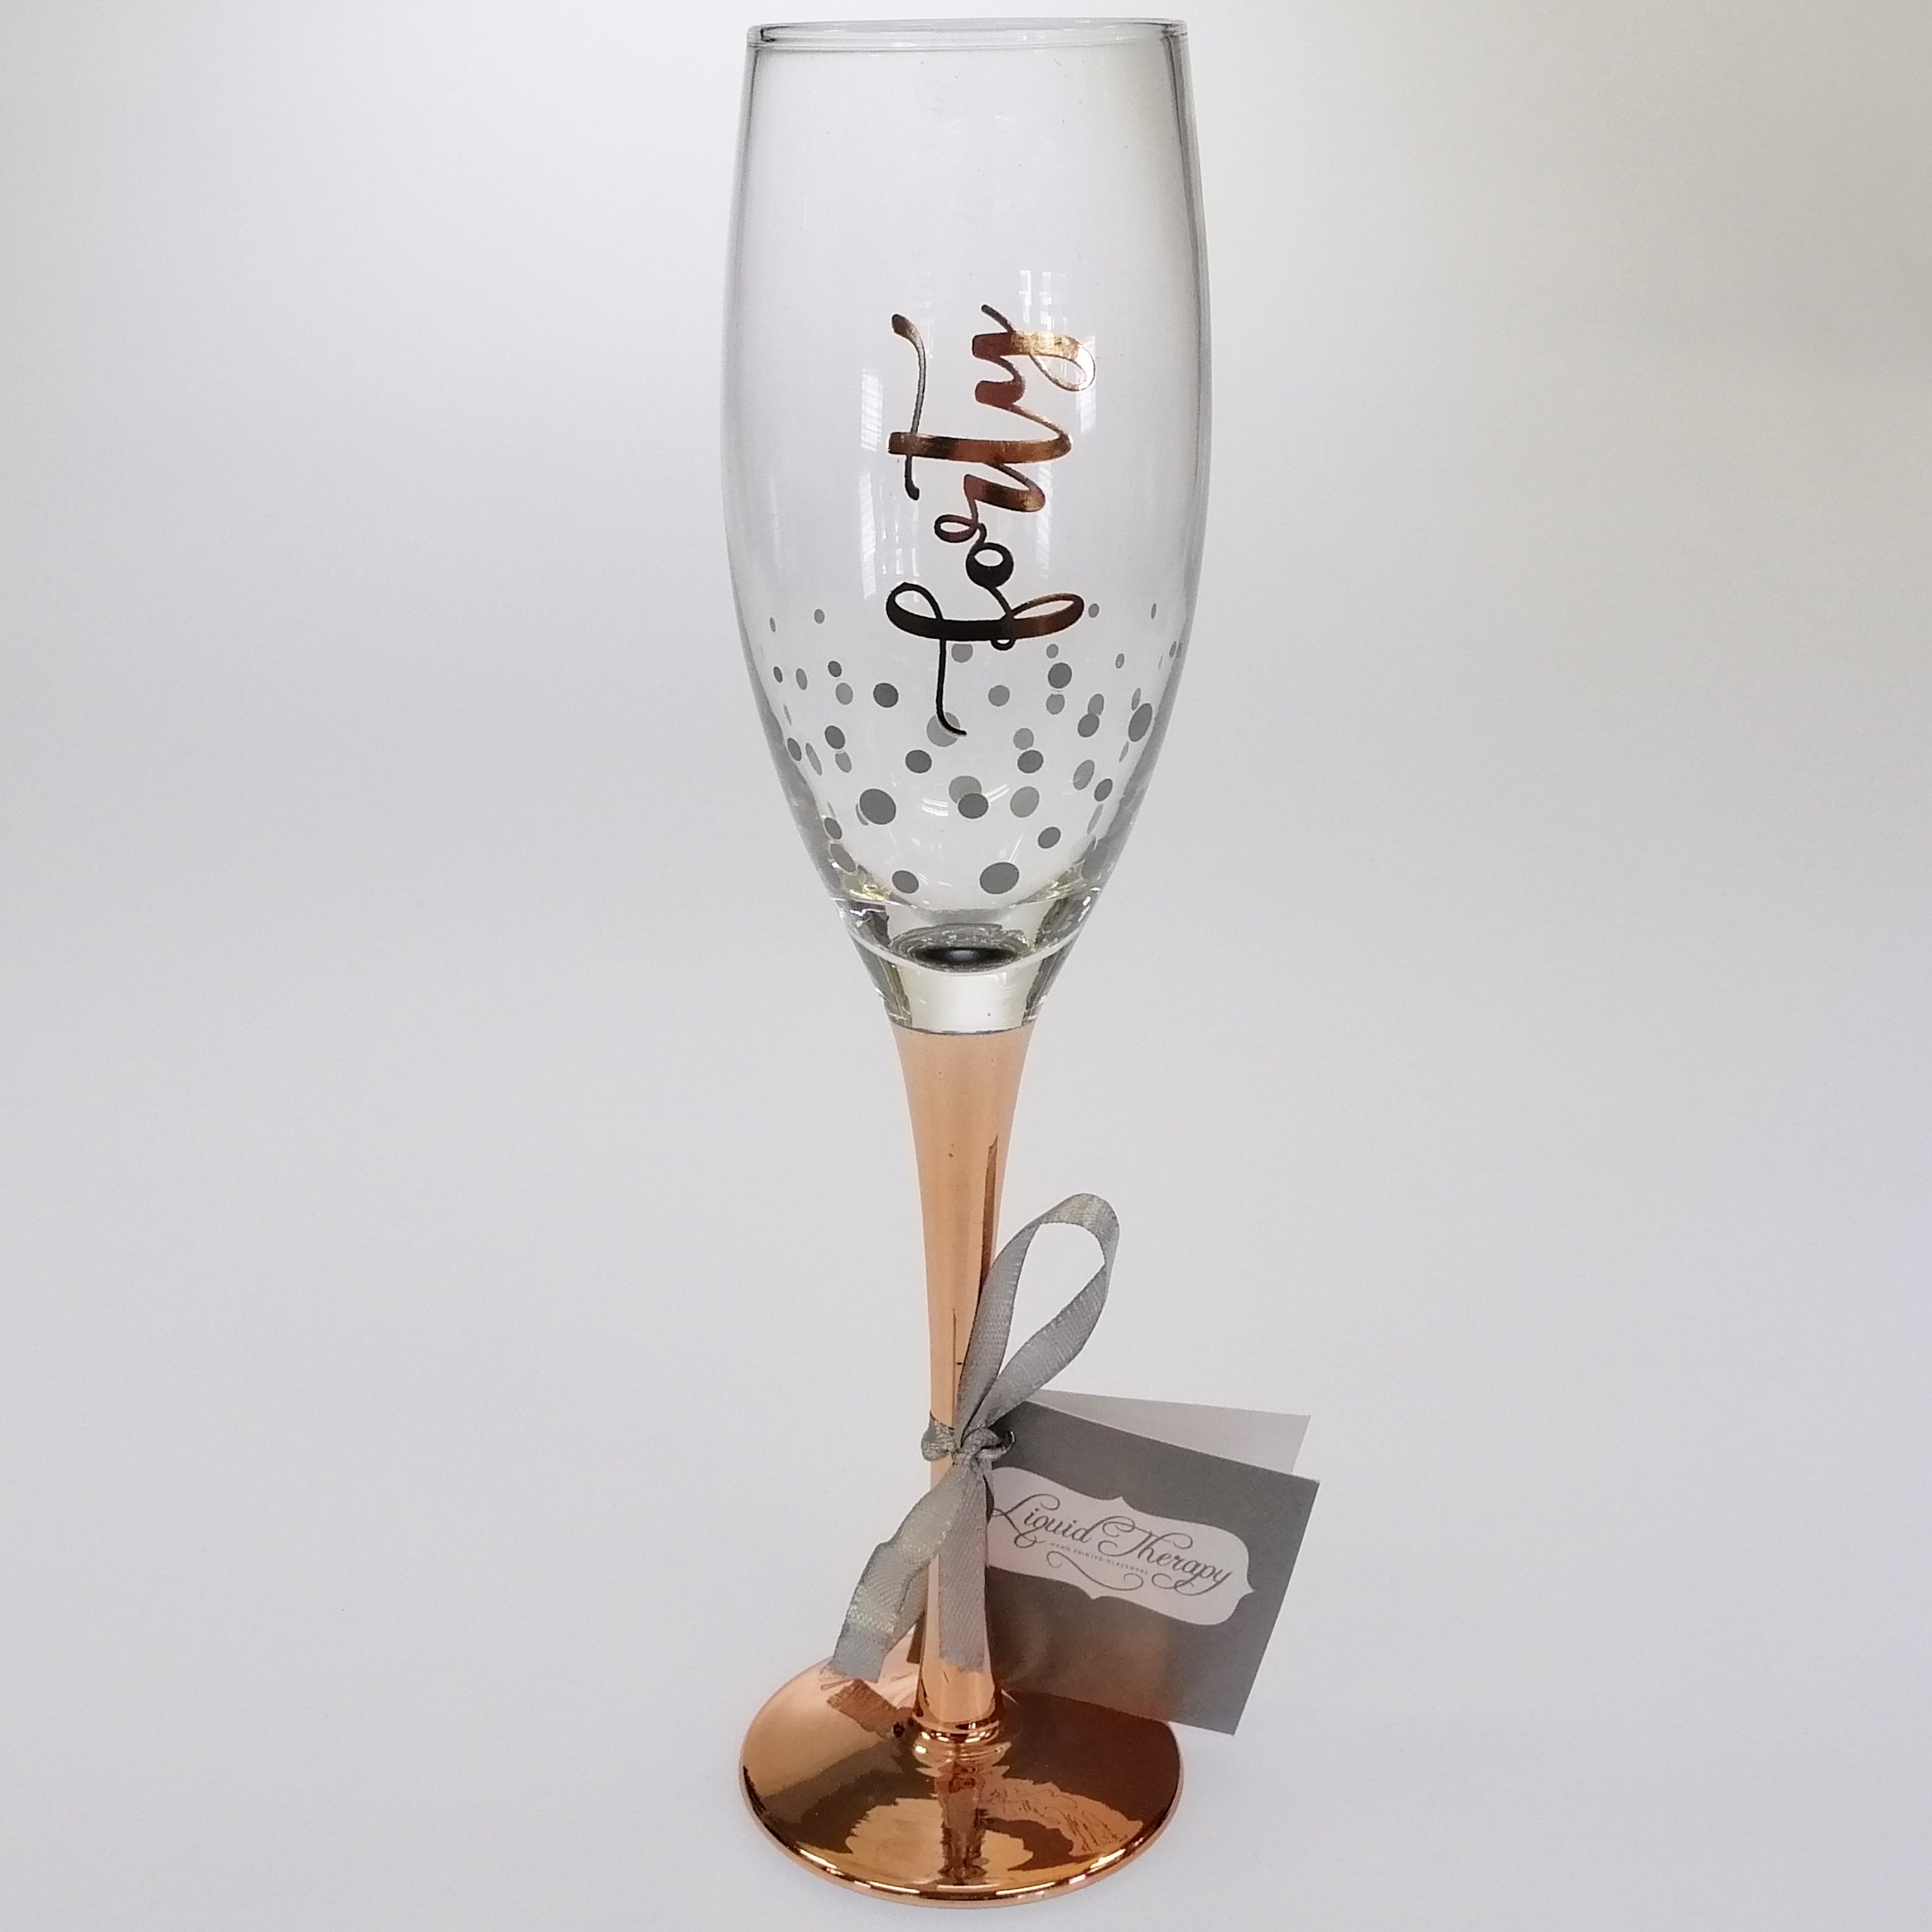 40th Birthday Rose Gold Stem Champagne Glass